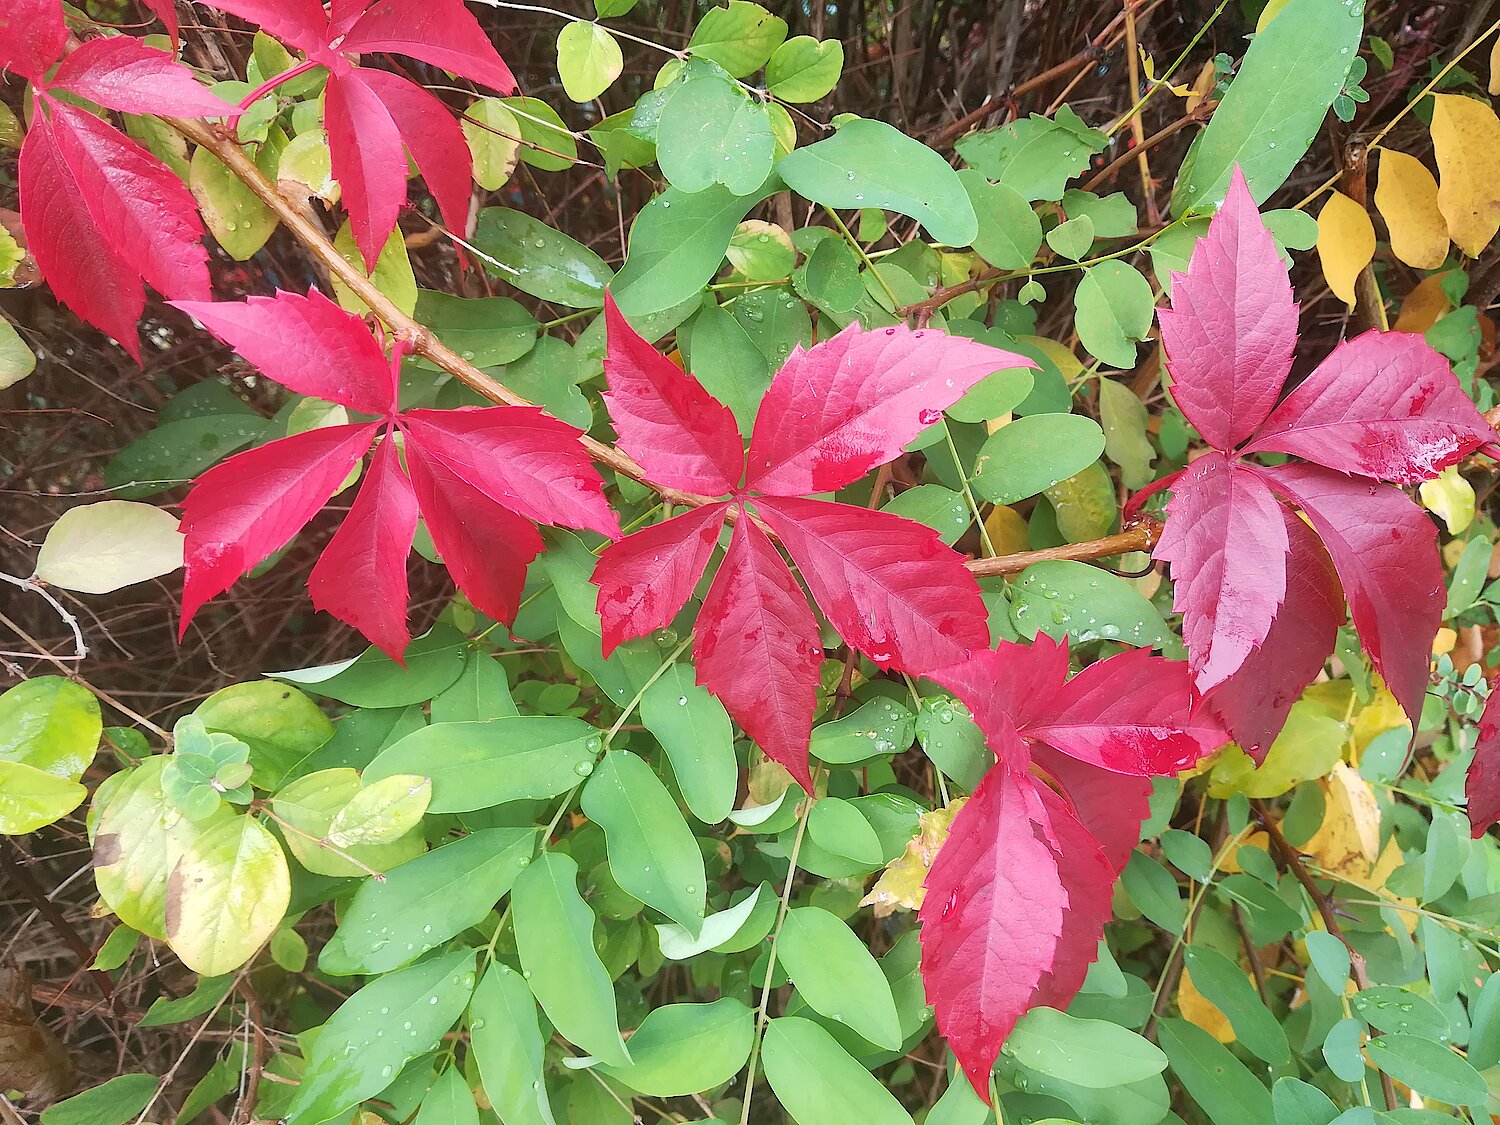 Herbstliche, leuchtend rot gefärbte Blätter des Wilden Weins über grünen Robinienblättern.